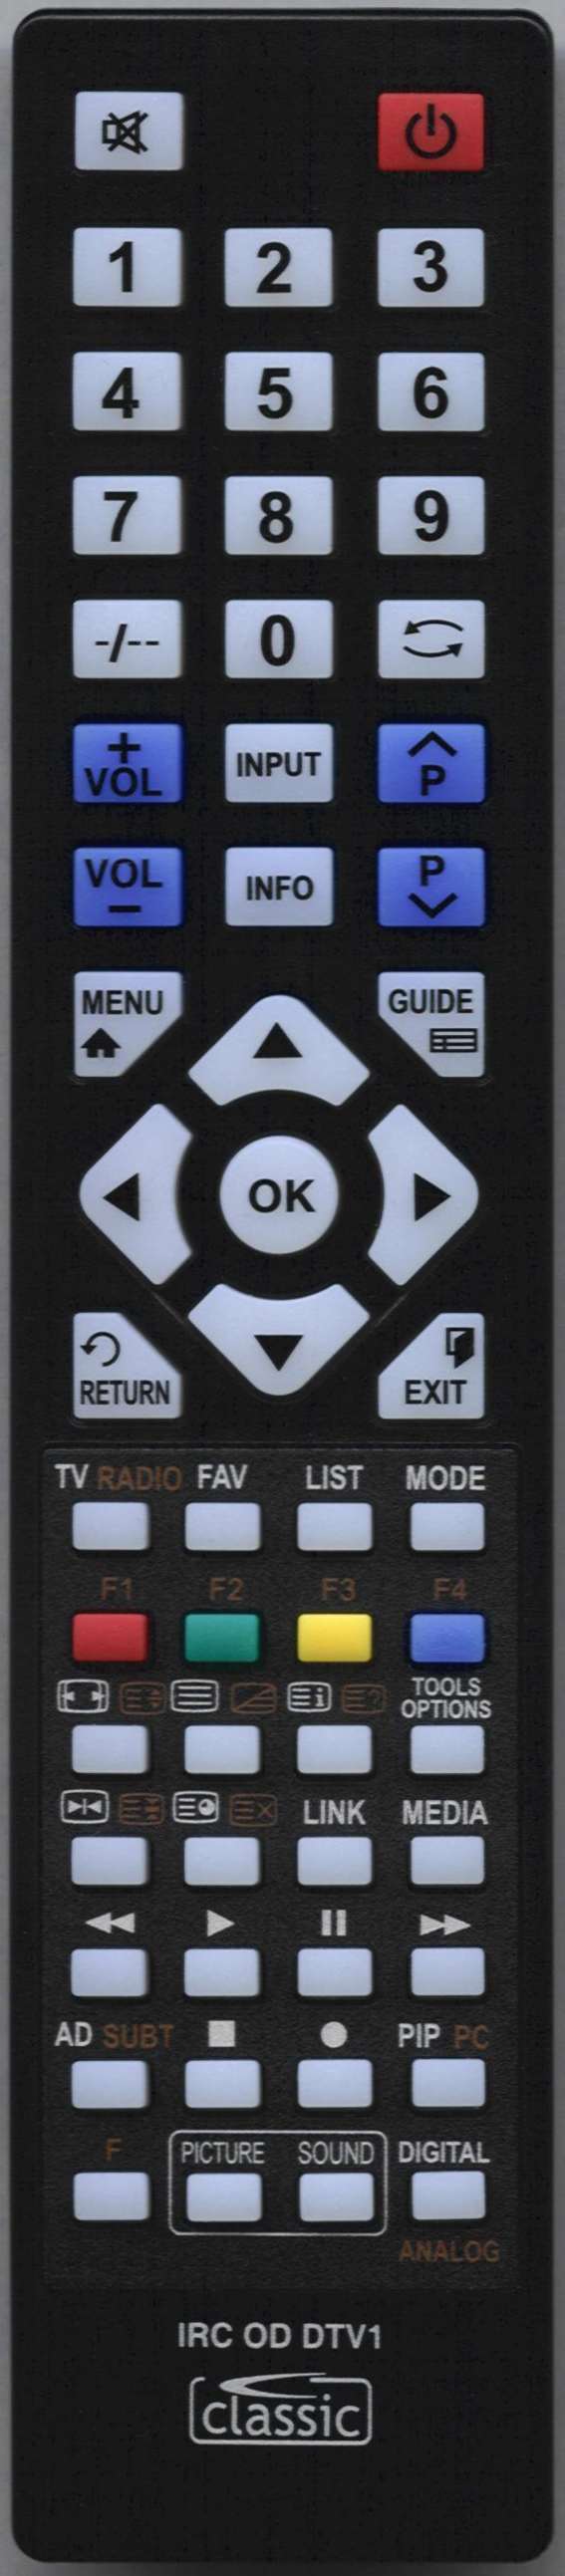 LUXOR 10048238 Remote Control Alternative